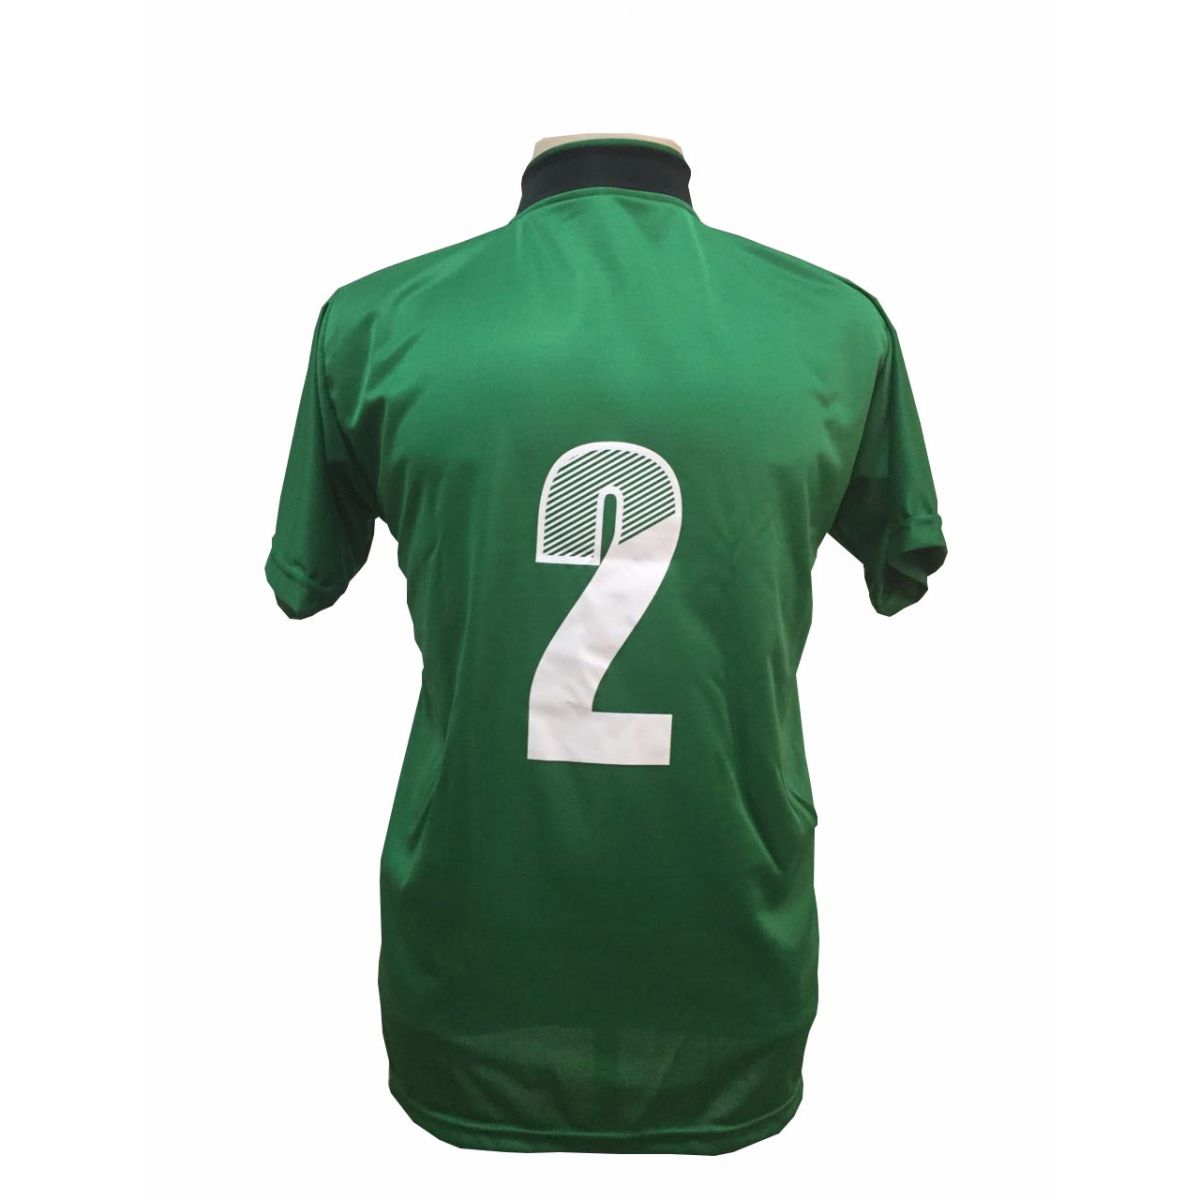 Uniforme Esportivo com 14 camisas modelo Palermo Verde/Preto + 14 calções modelo Madrid + 1 Goleiro + Brindes